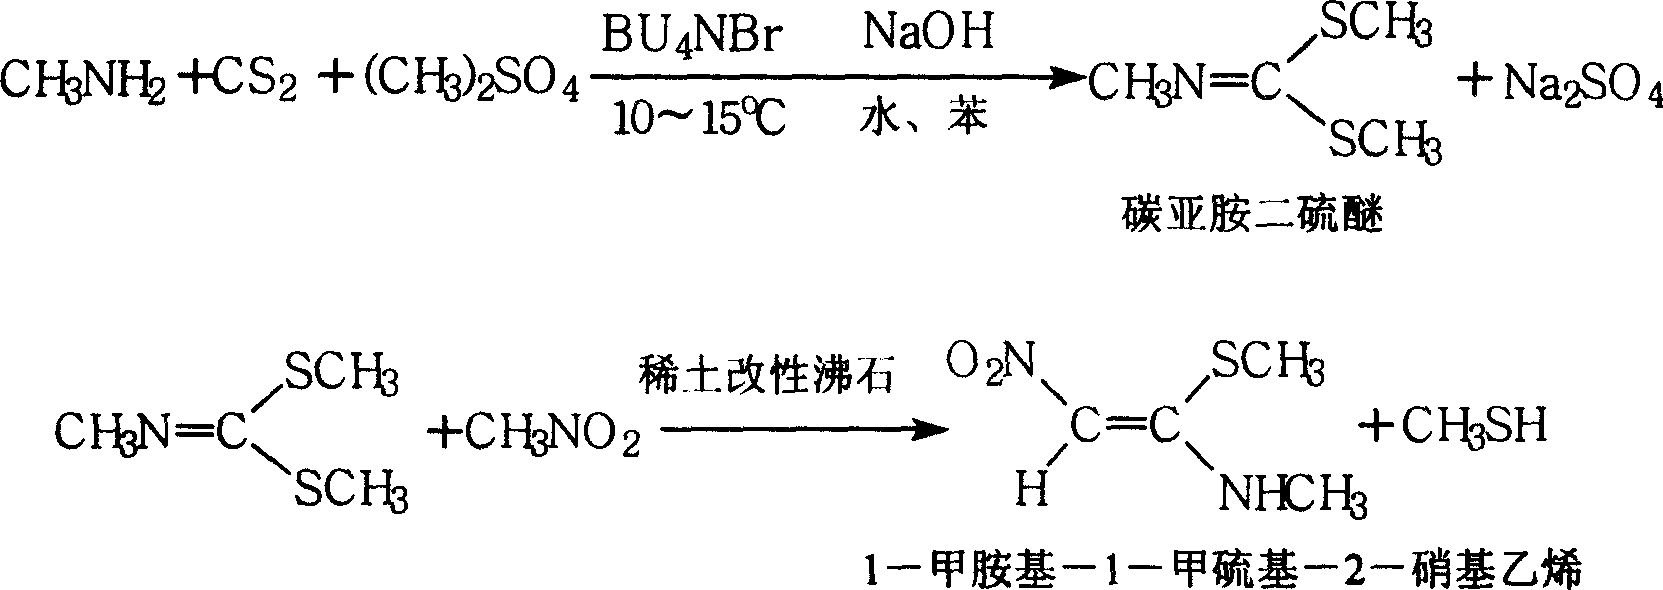 1-methylamino-1- methylthio-2-nitroethylene synthesis method